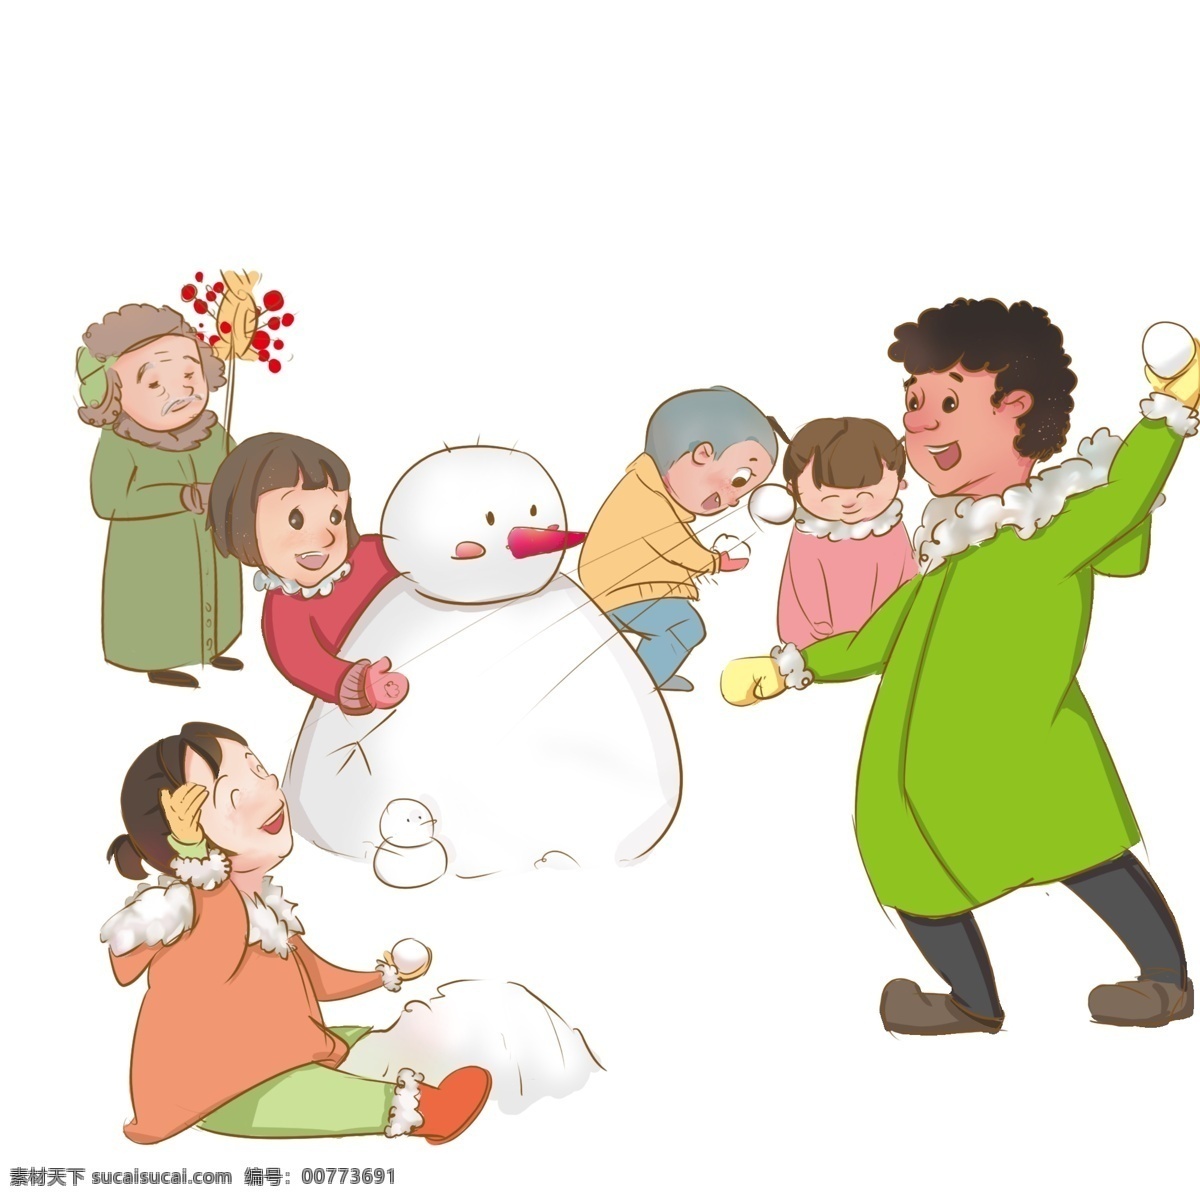 新年 堆 雪人 玩耍 小孩 堆雪人 打雪仗 卖糖葫芦 快乐 幸福 吉祥 如意 喜庆 高兴 手绘 插画 卡通